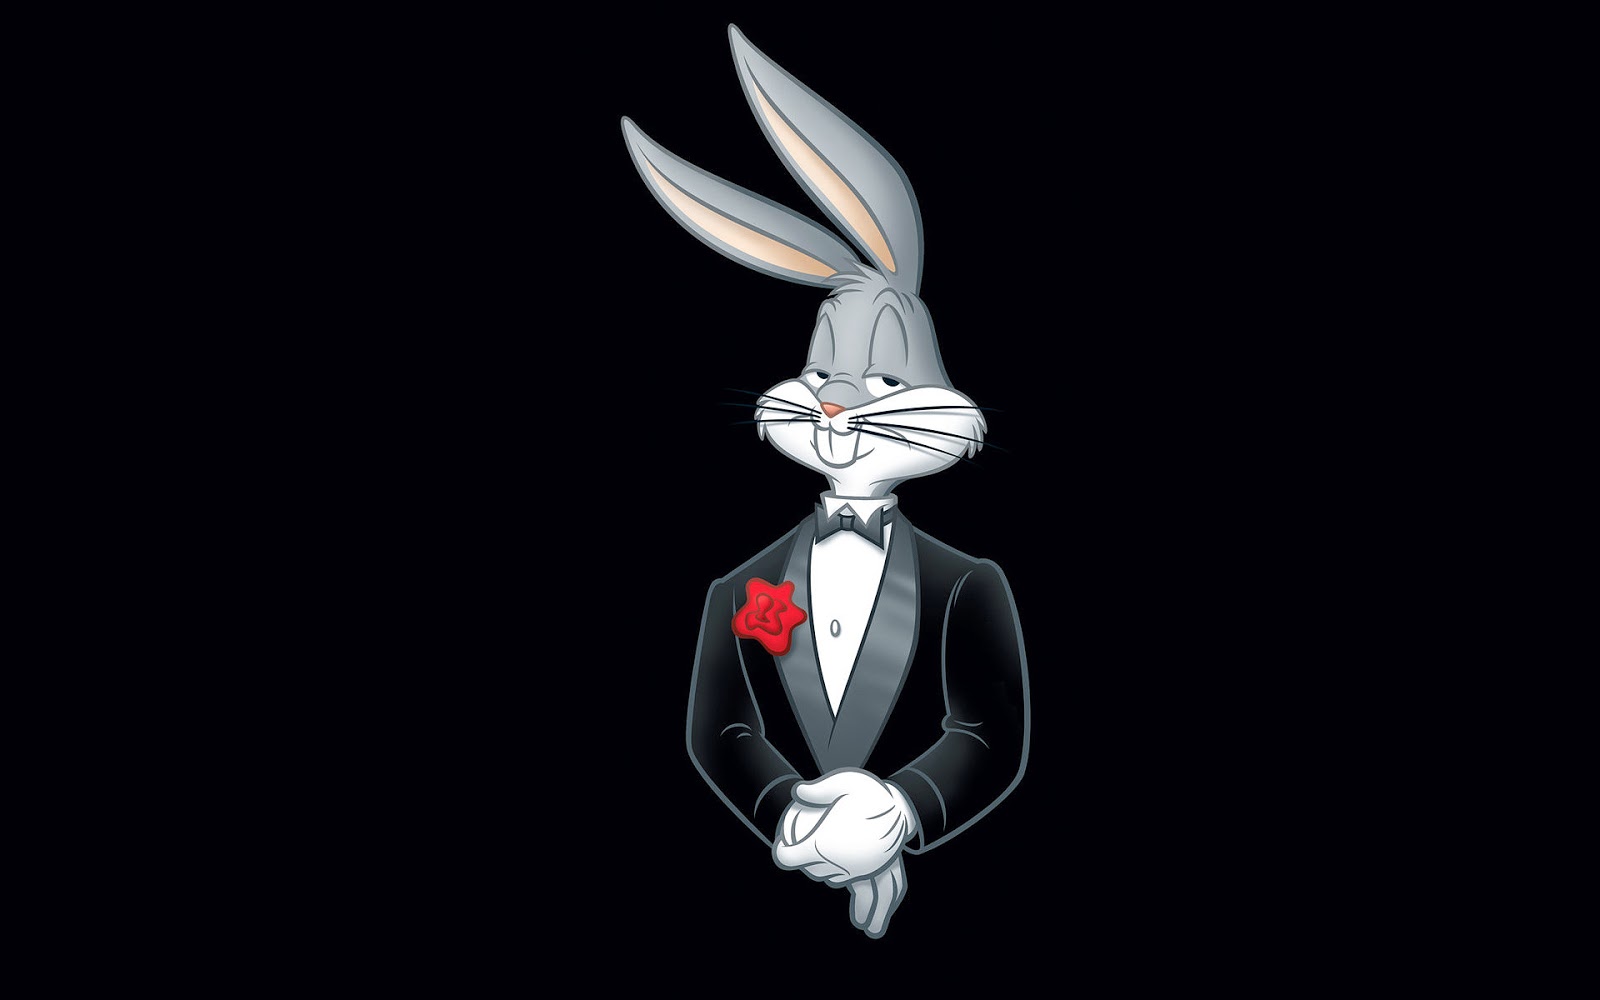 Zwarte Achtergrond Met Bugs Bunny Van Looney Tunes